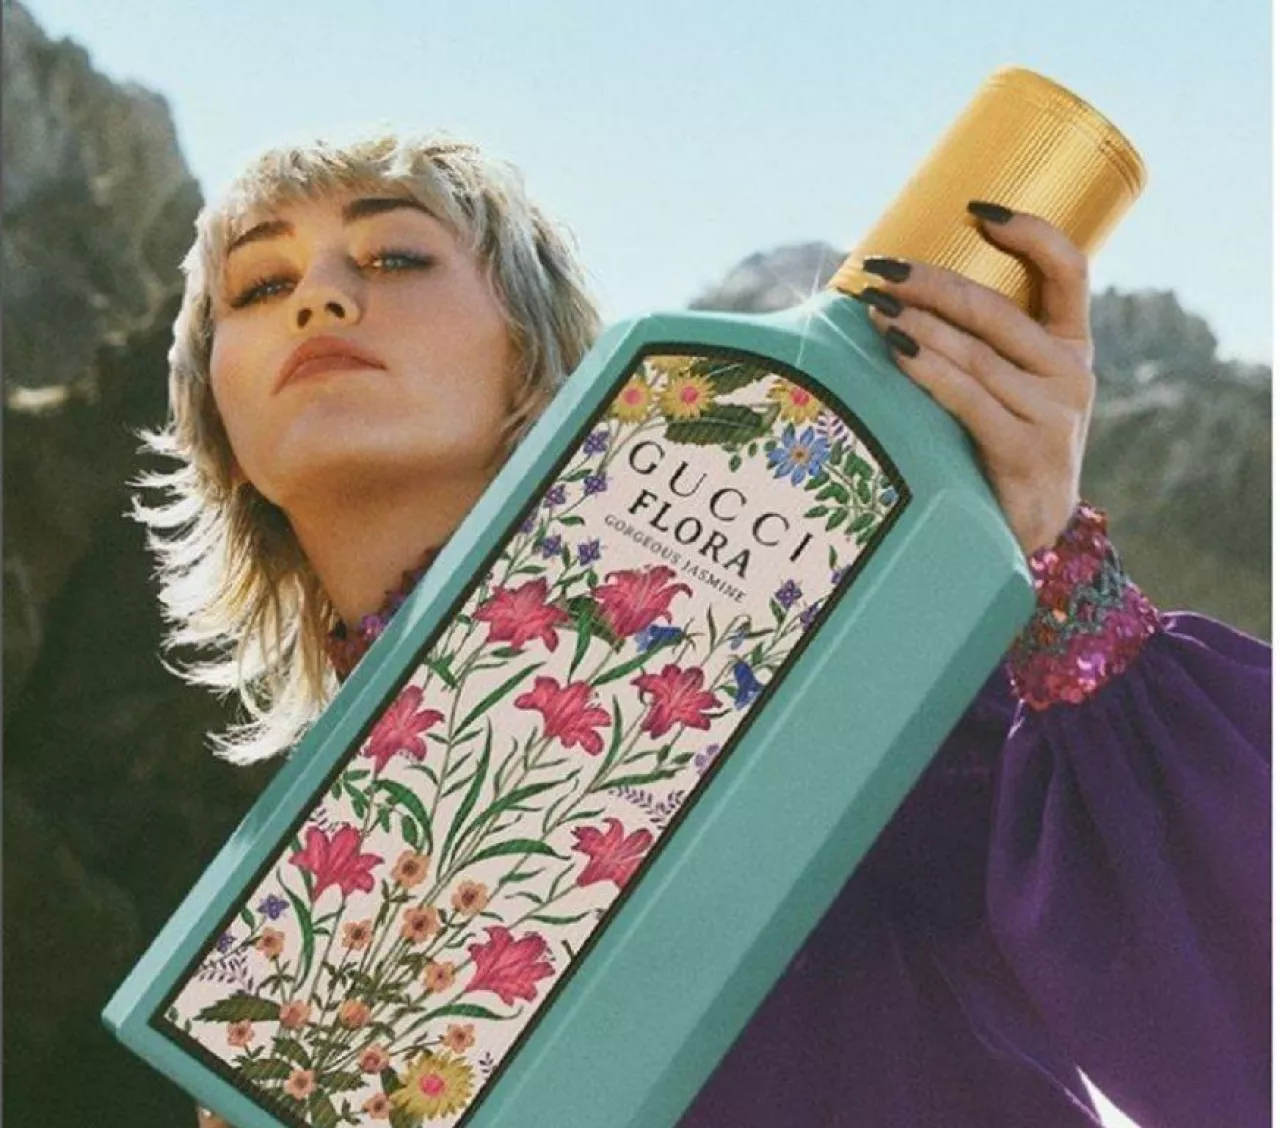 Kluczowe premiery zapachowe Coty, w tym Gucci Flora Gorgeous Jasmine, cieszyły się ogromnym zainteresowaniem konsumentów na większości rynków